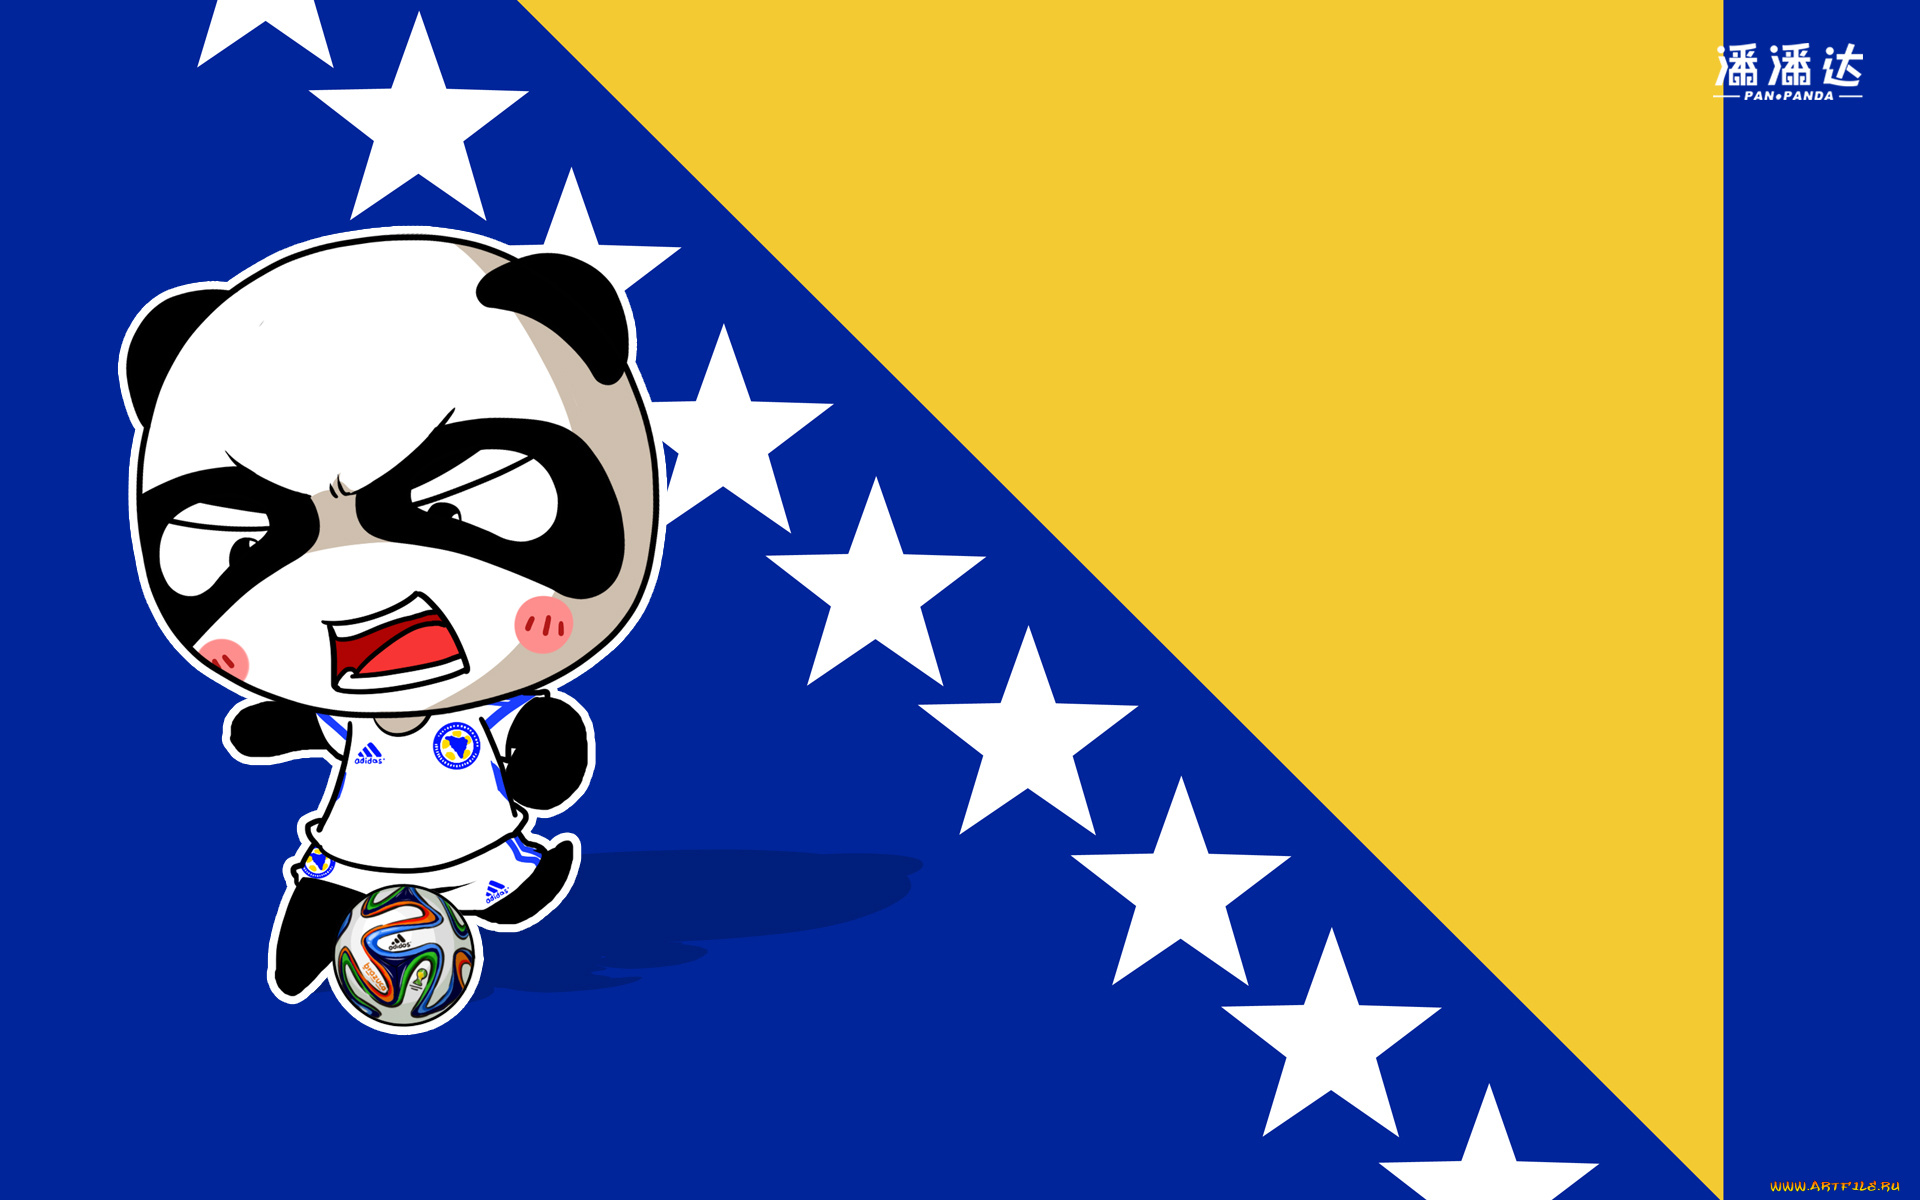 спорт, 3d, рисованные, панда, флаг, мяч, чемпионат, бразилия, 2014г